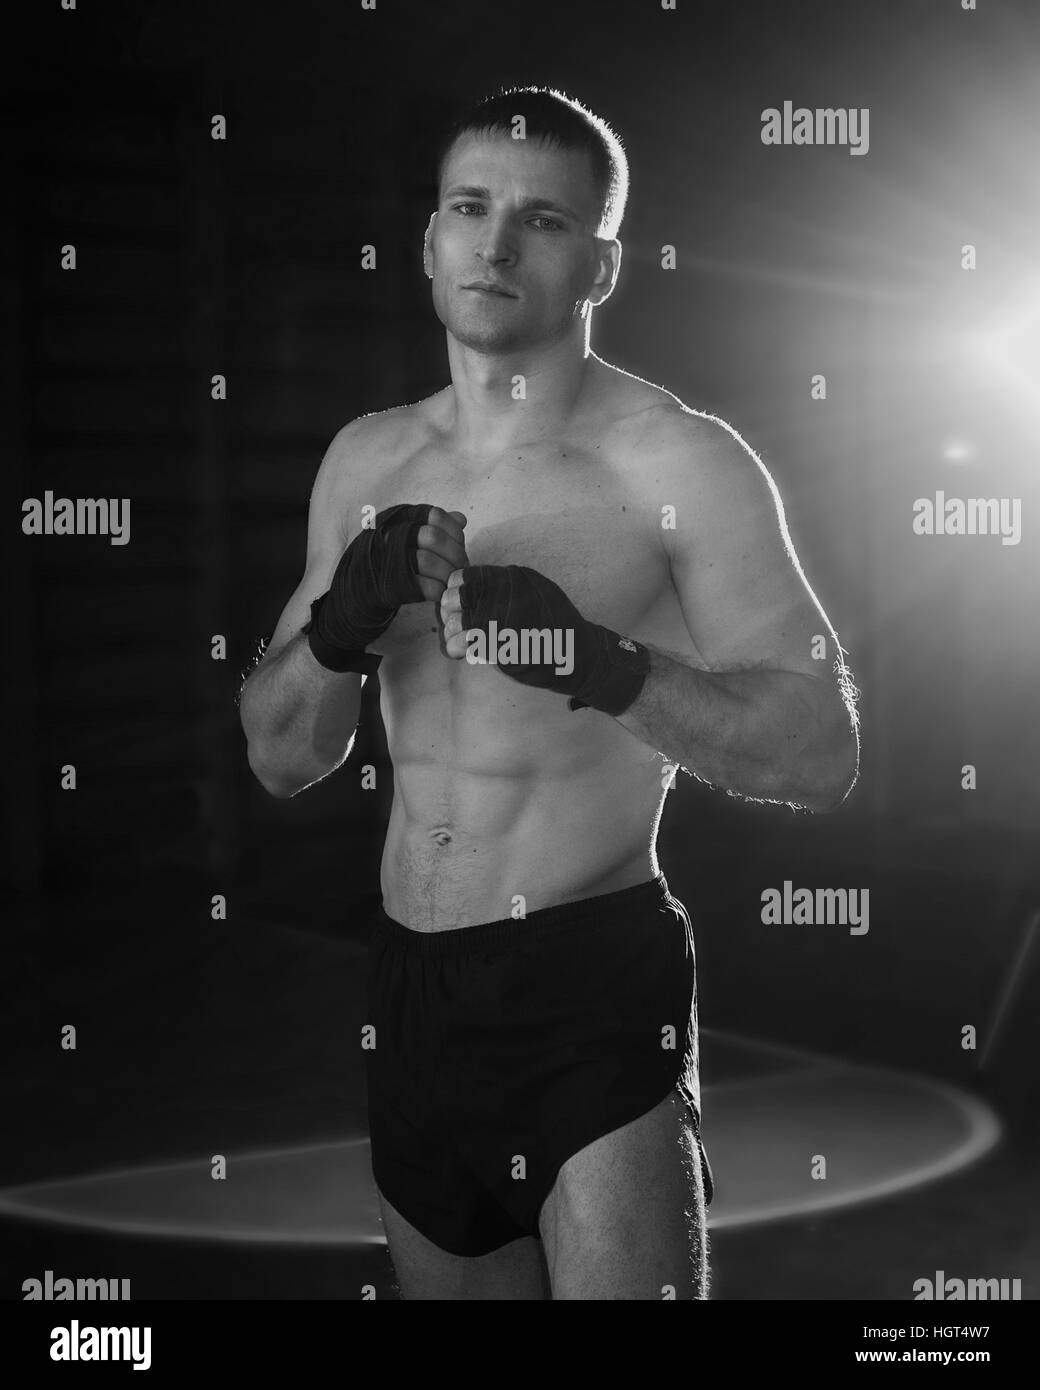 Junger sportlicher Mann mit Box-Bandagen auf seine Hände. Schwarz / weiß Foto Stockfoto